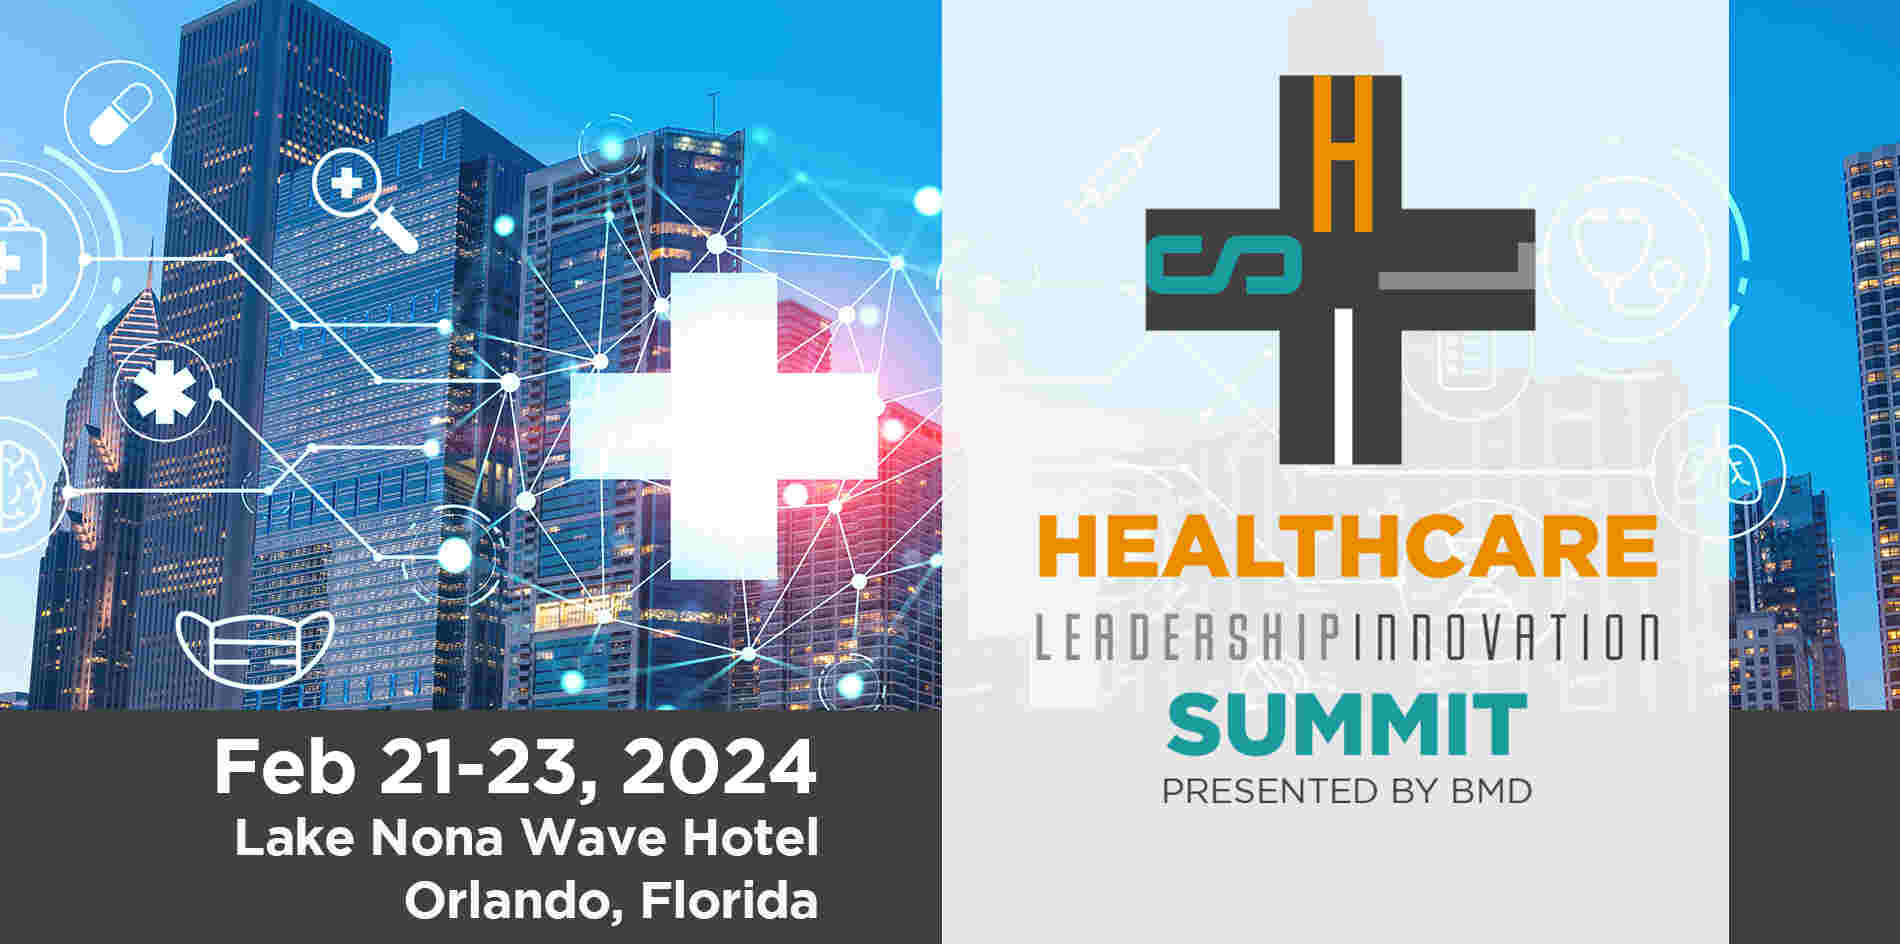 Healthcare Leadership Innovation Summit 2024